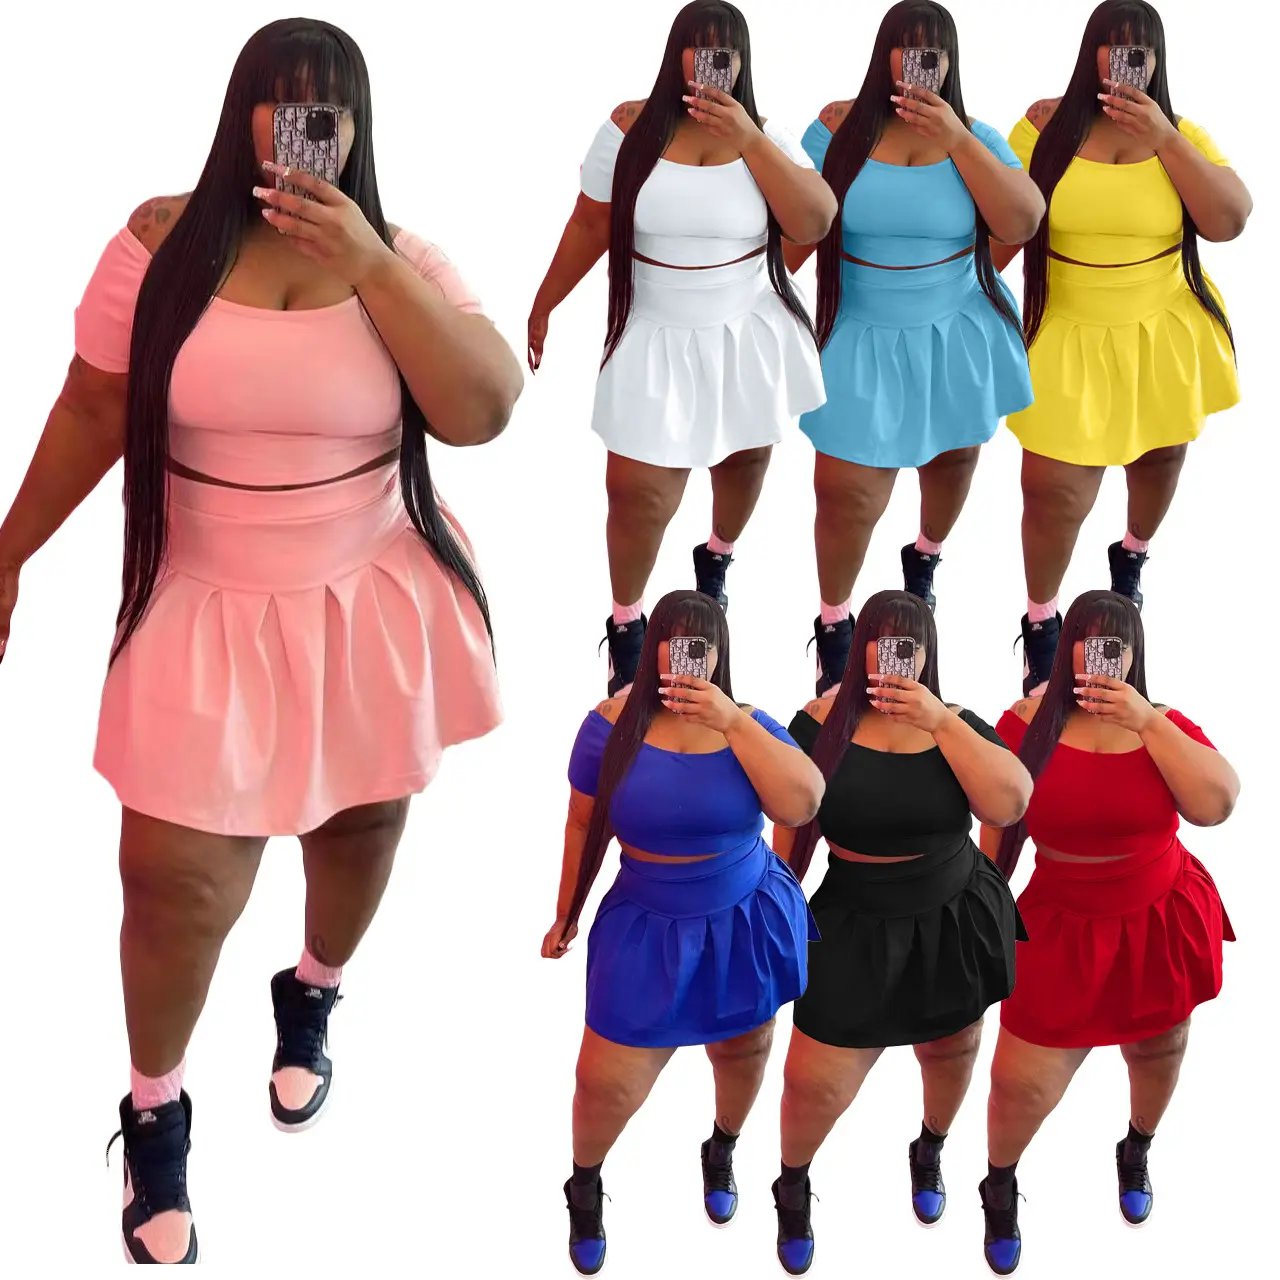 Amazon hot sale women's plus size clothing fashion off shoulder crop top tracksuit solid color women cotton 2 piece skirt set